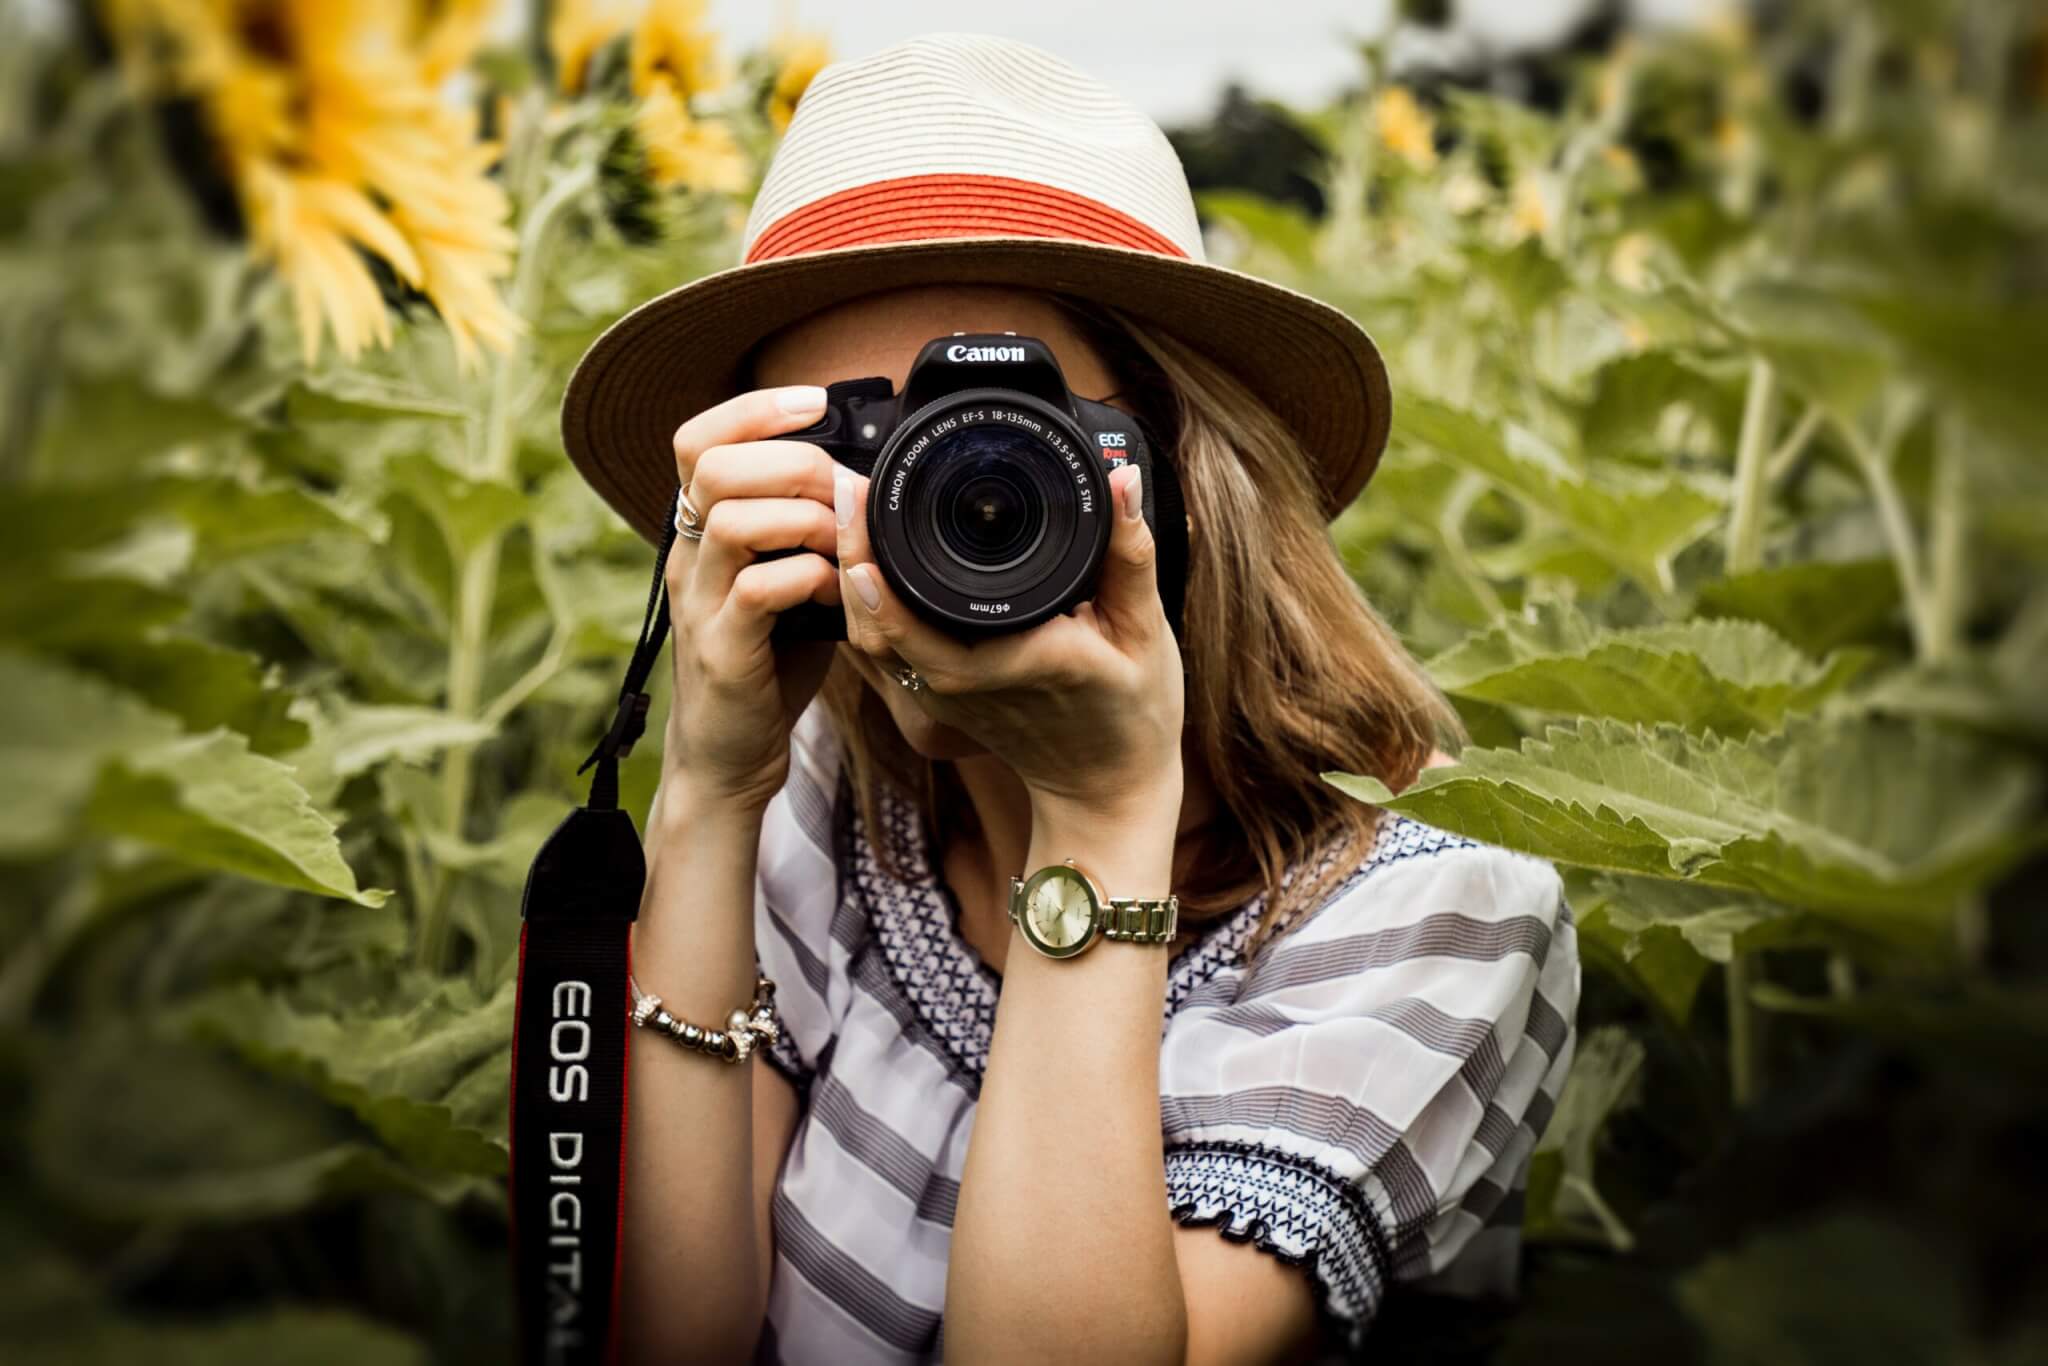 10 Tipps zum erfolgreichen Fotoverkauf